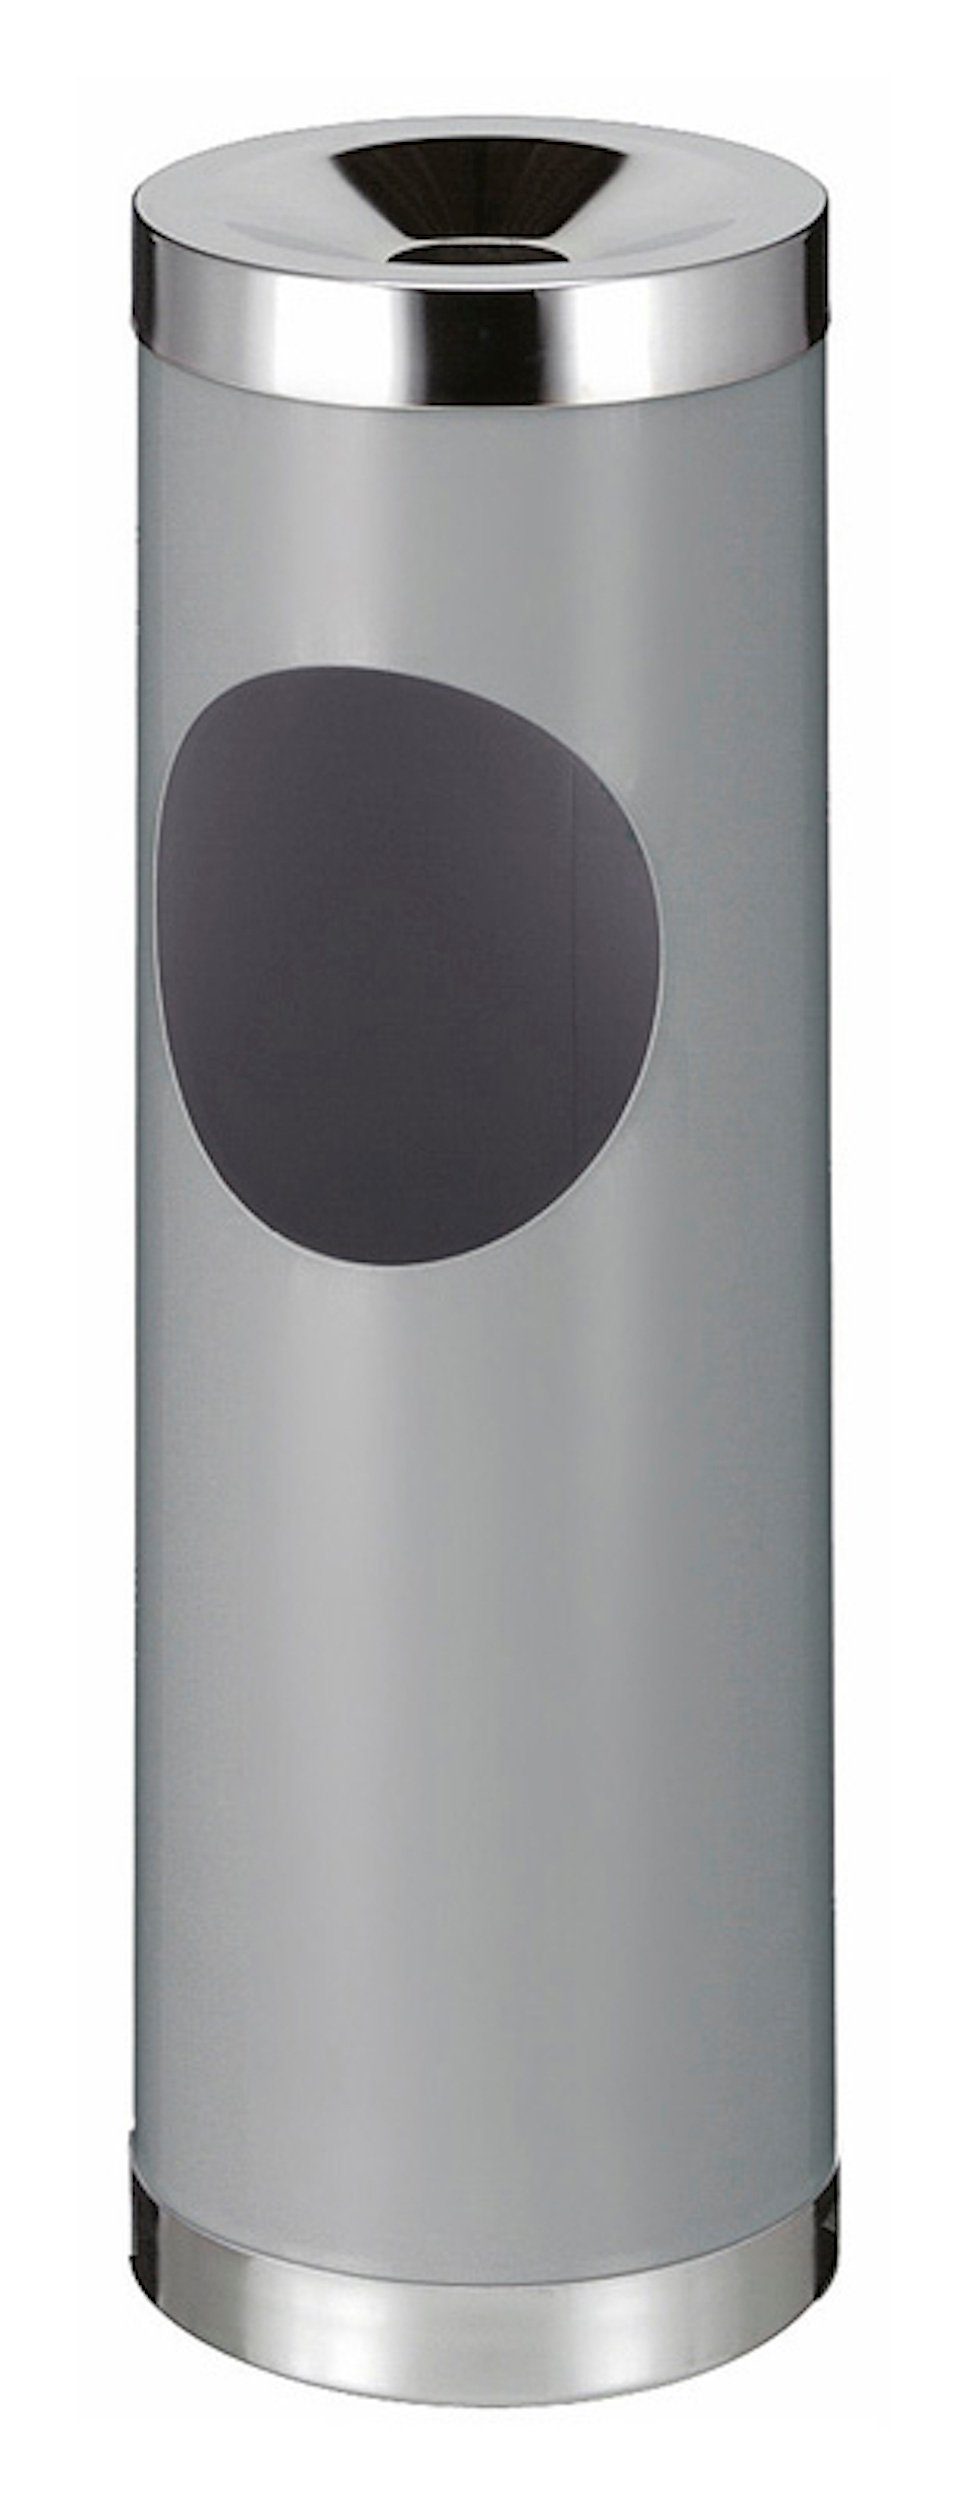 PROREGAL® Aschenbecher Runder Metall Kombiascher mit ovaler Einwurfsöffnung, 30L, Grau